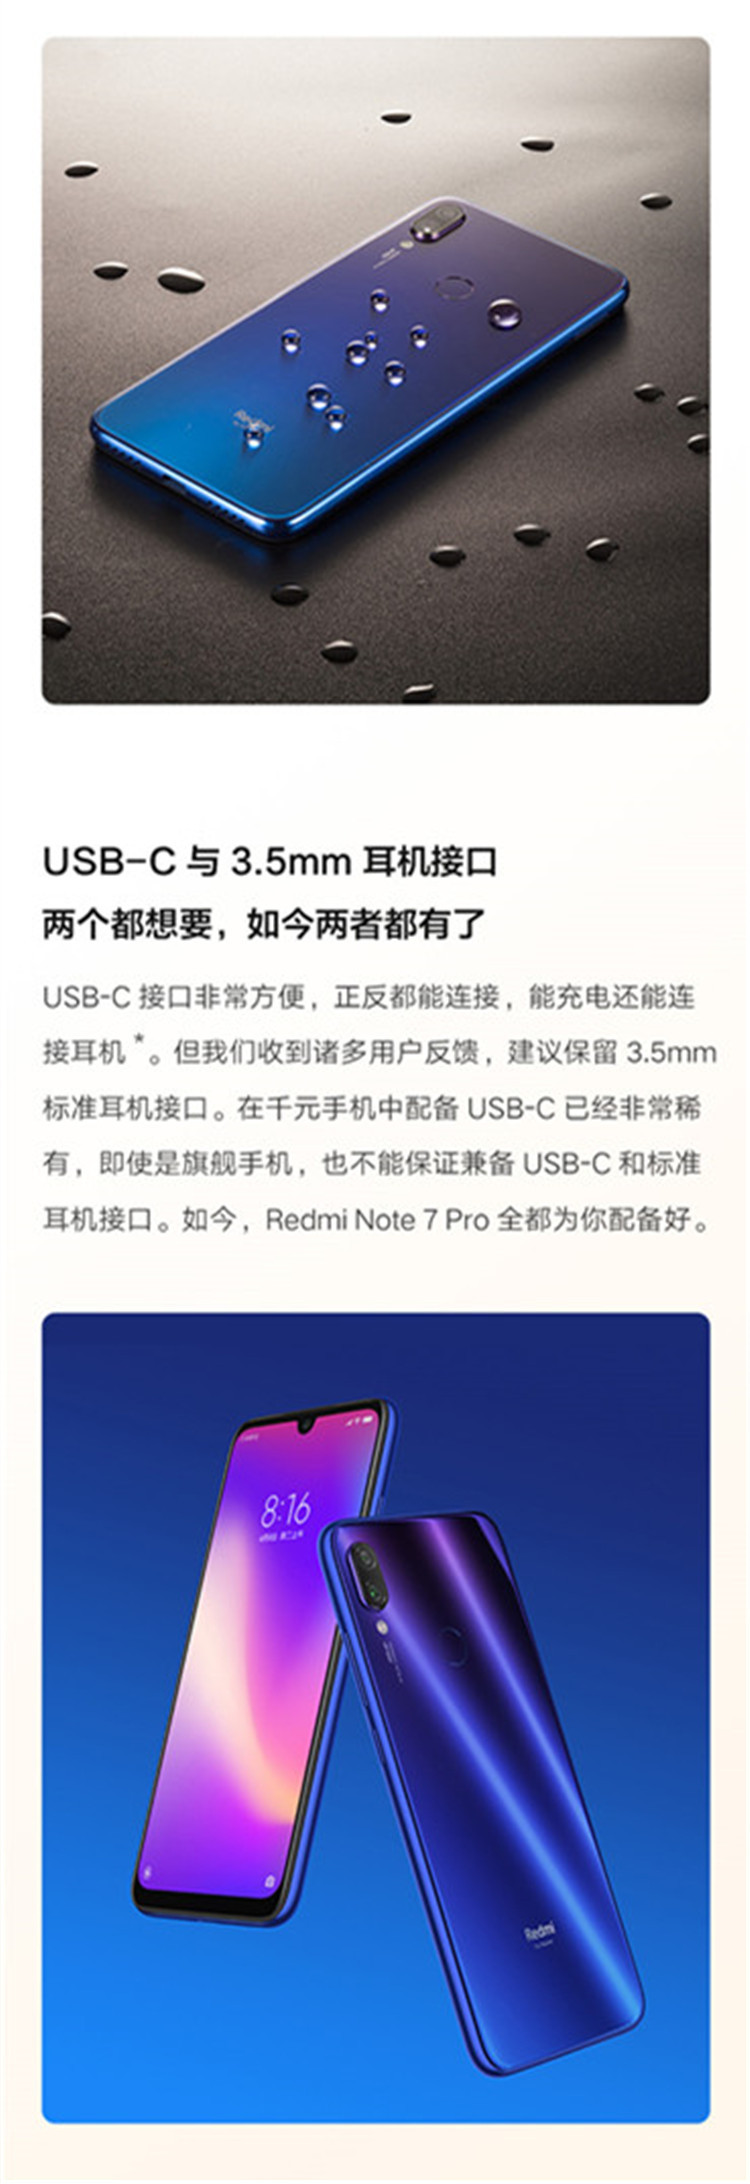 小米/MIUI Redmi 红米Note7 Pro 全网通手机 骁龙675 4000mAh超长续航